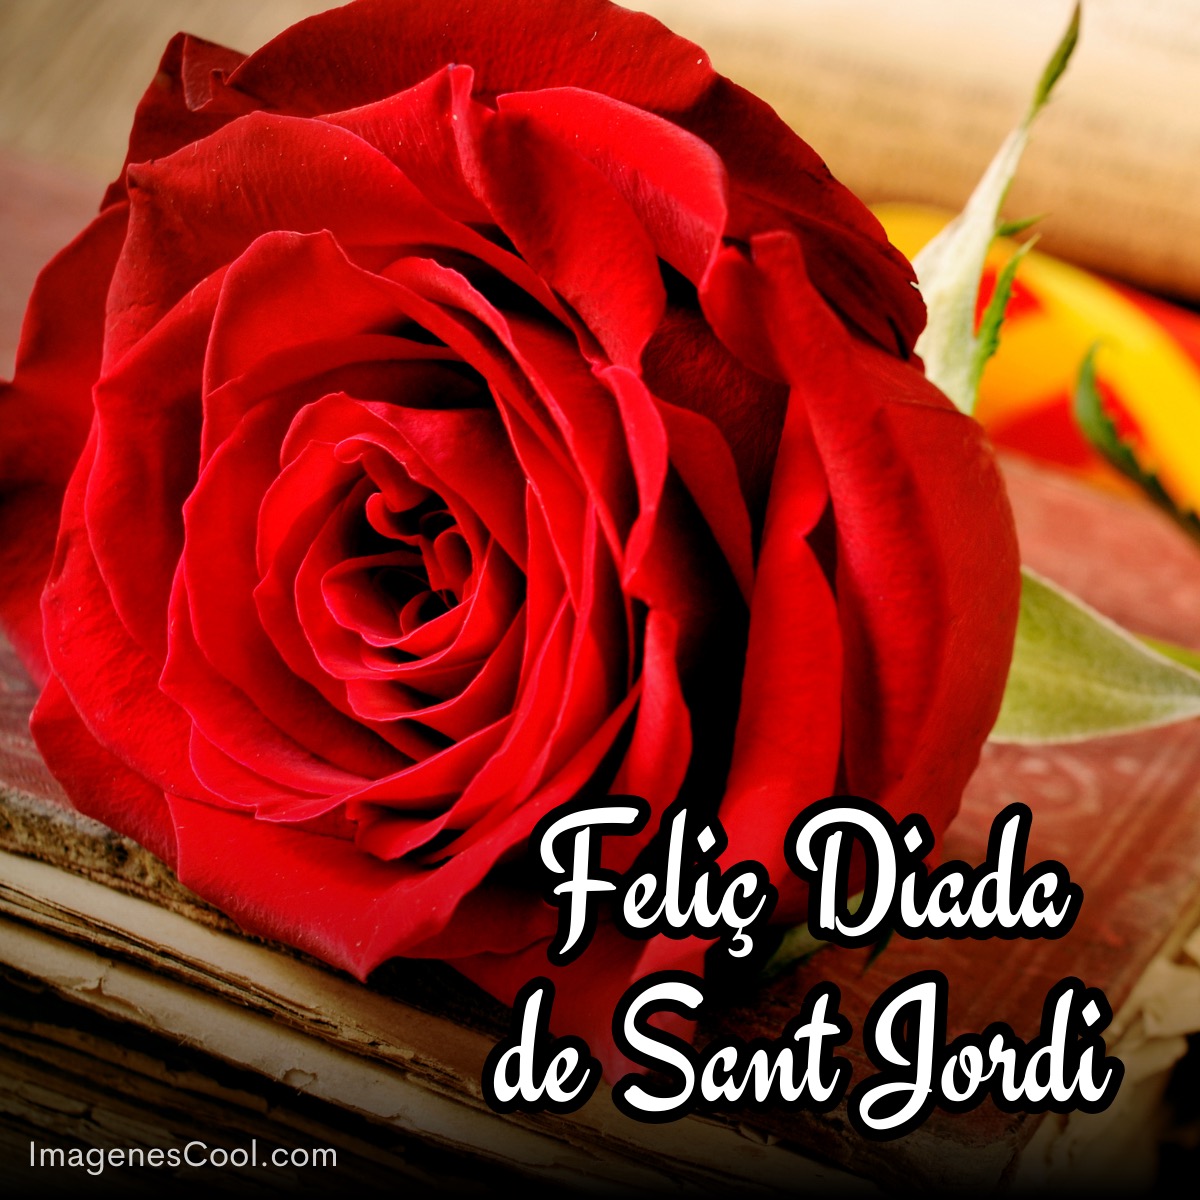 Rosa roja sobre libros con texto 'Feliz Día de Sant Jordi'